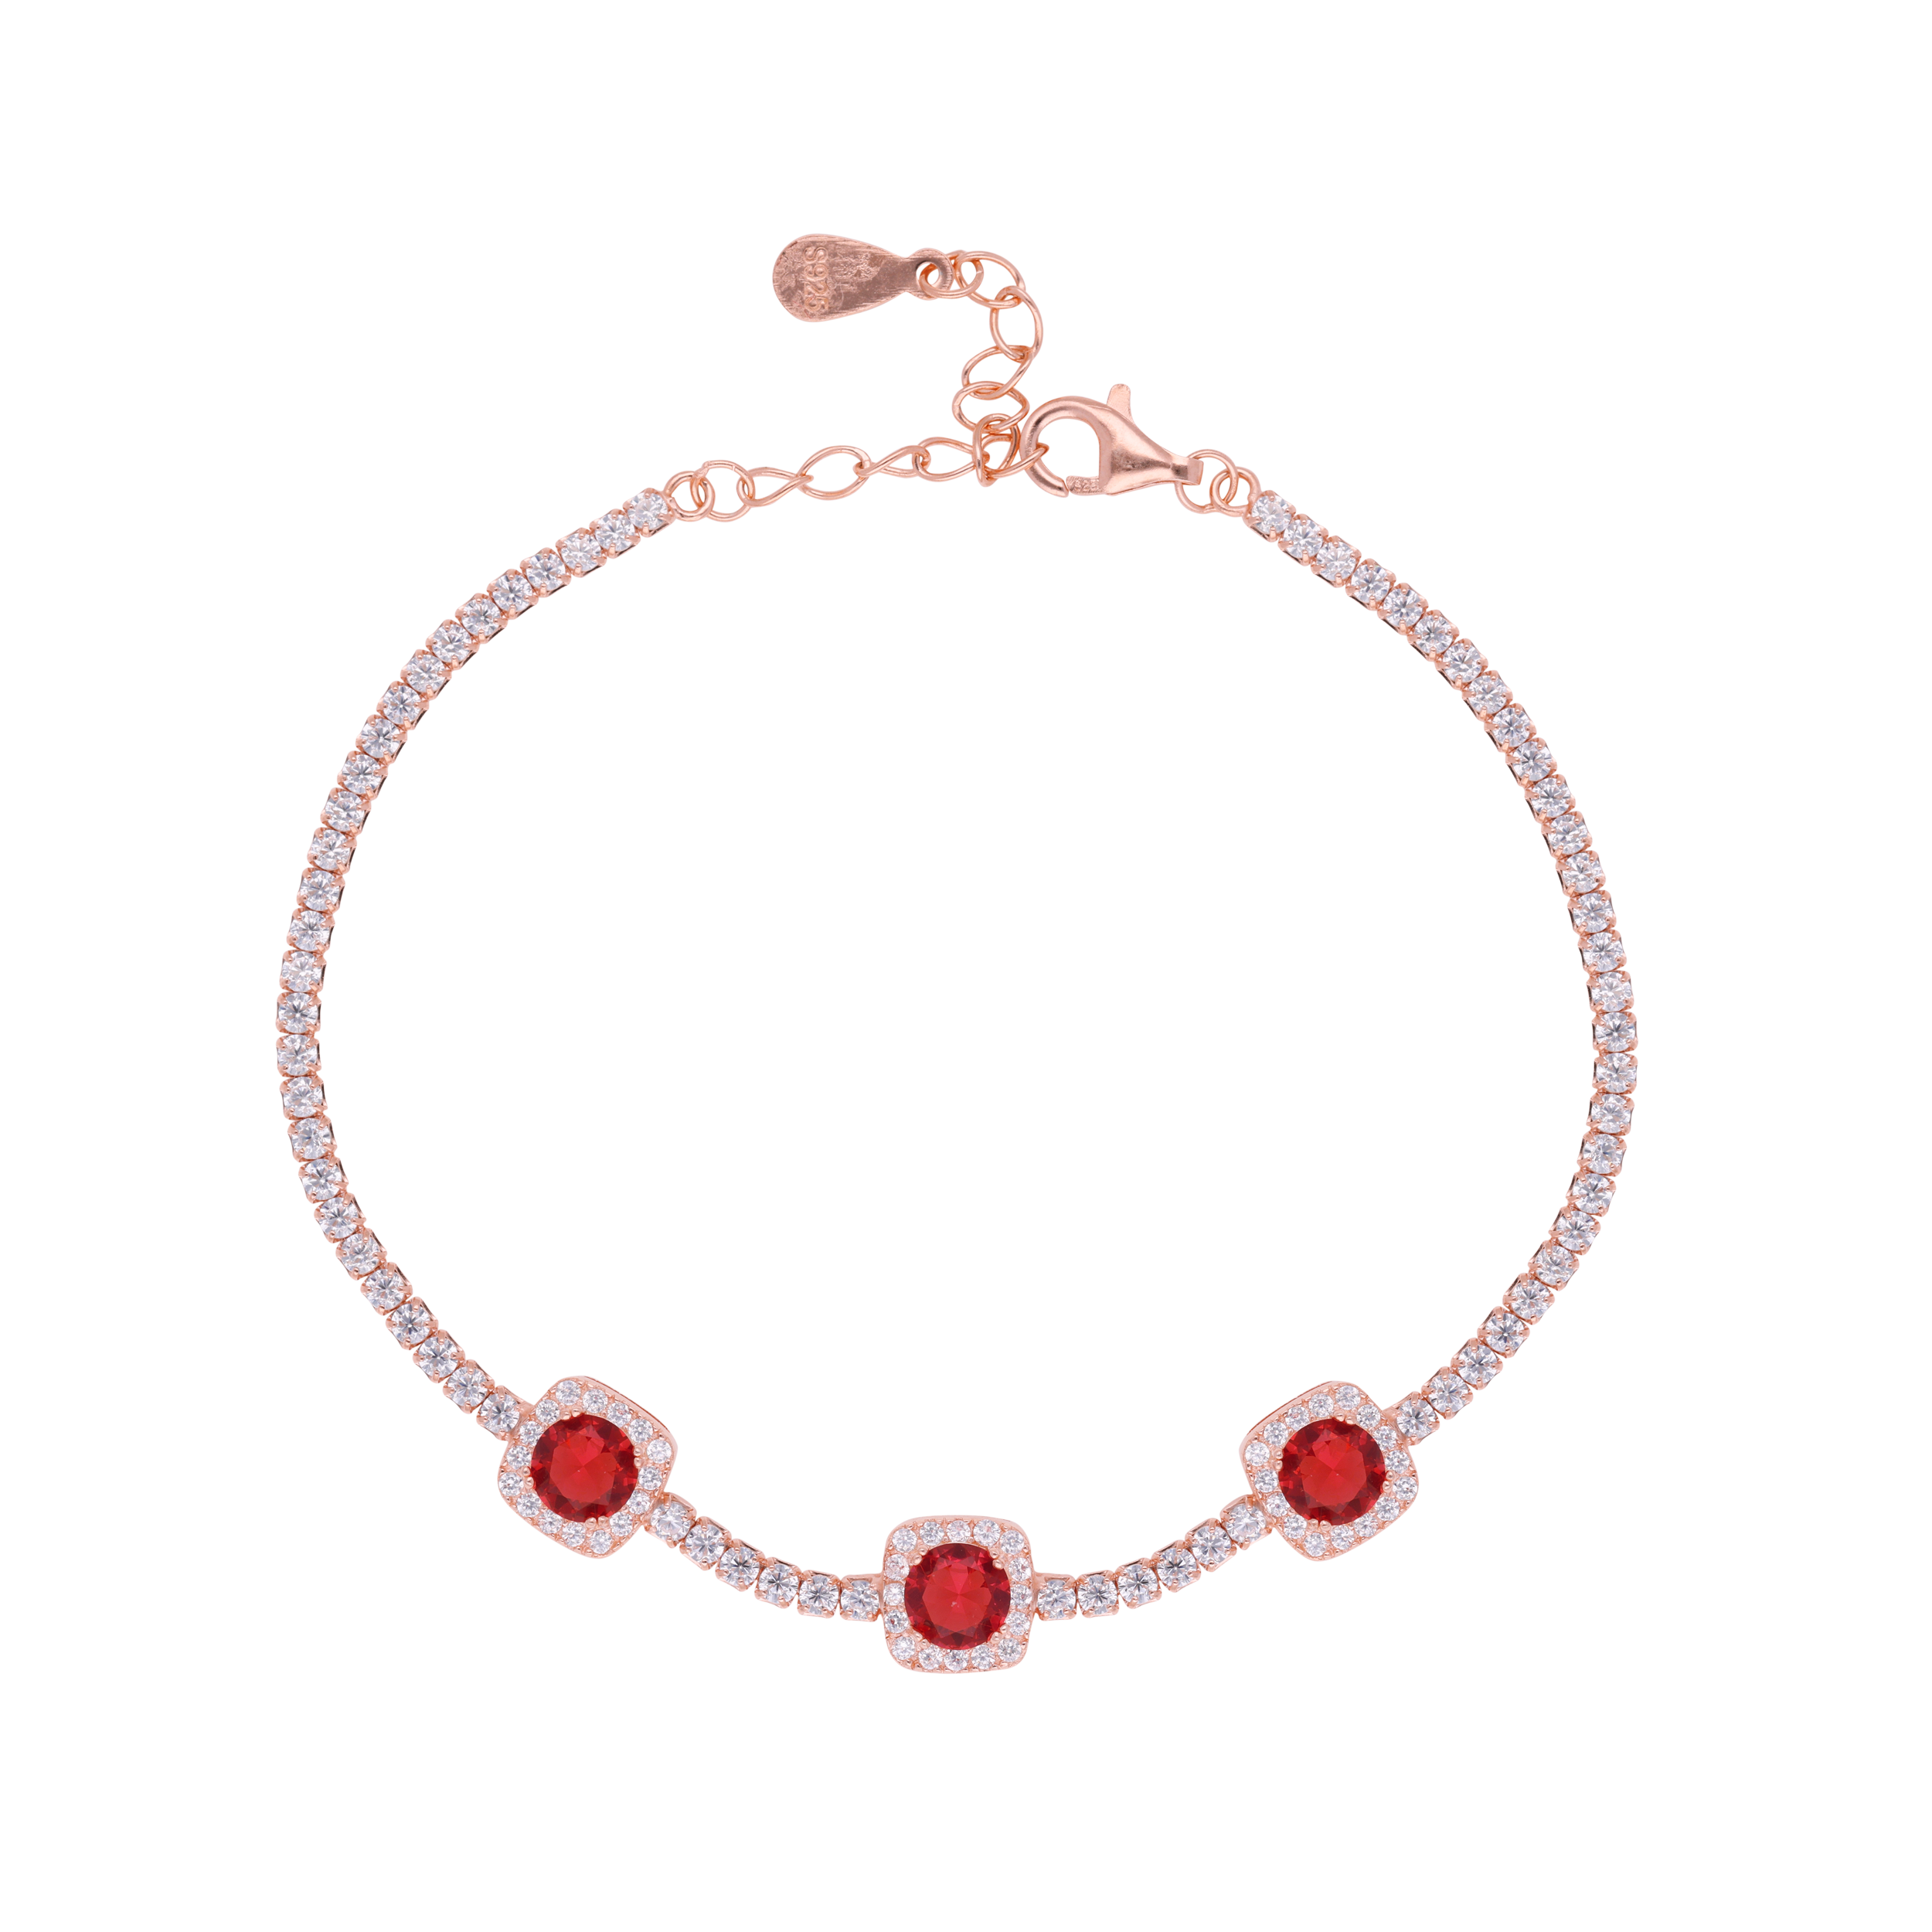 Radiant Rouge: Rose Gold Bracelet | SKU: 0019272030